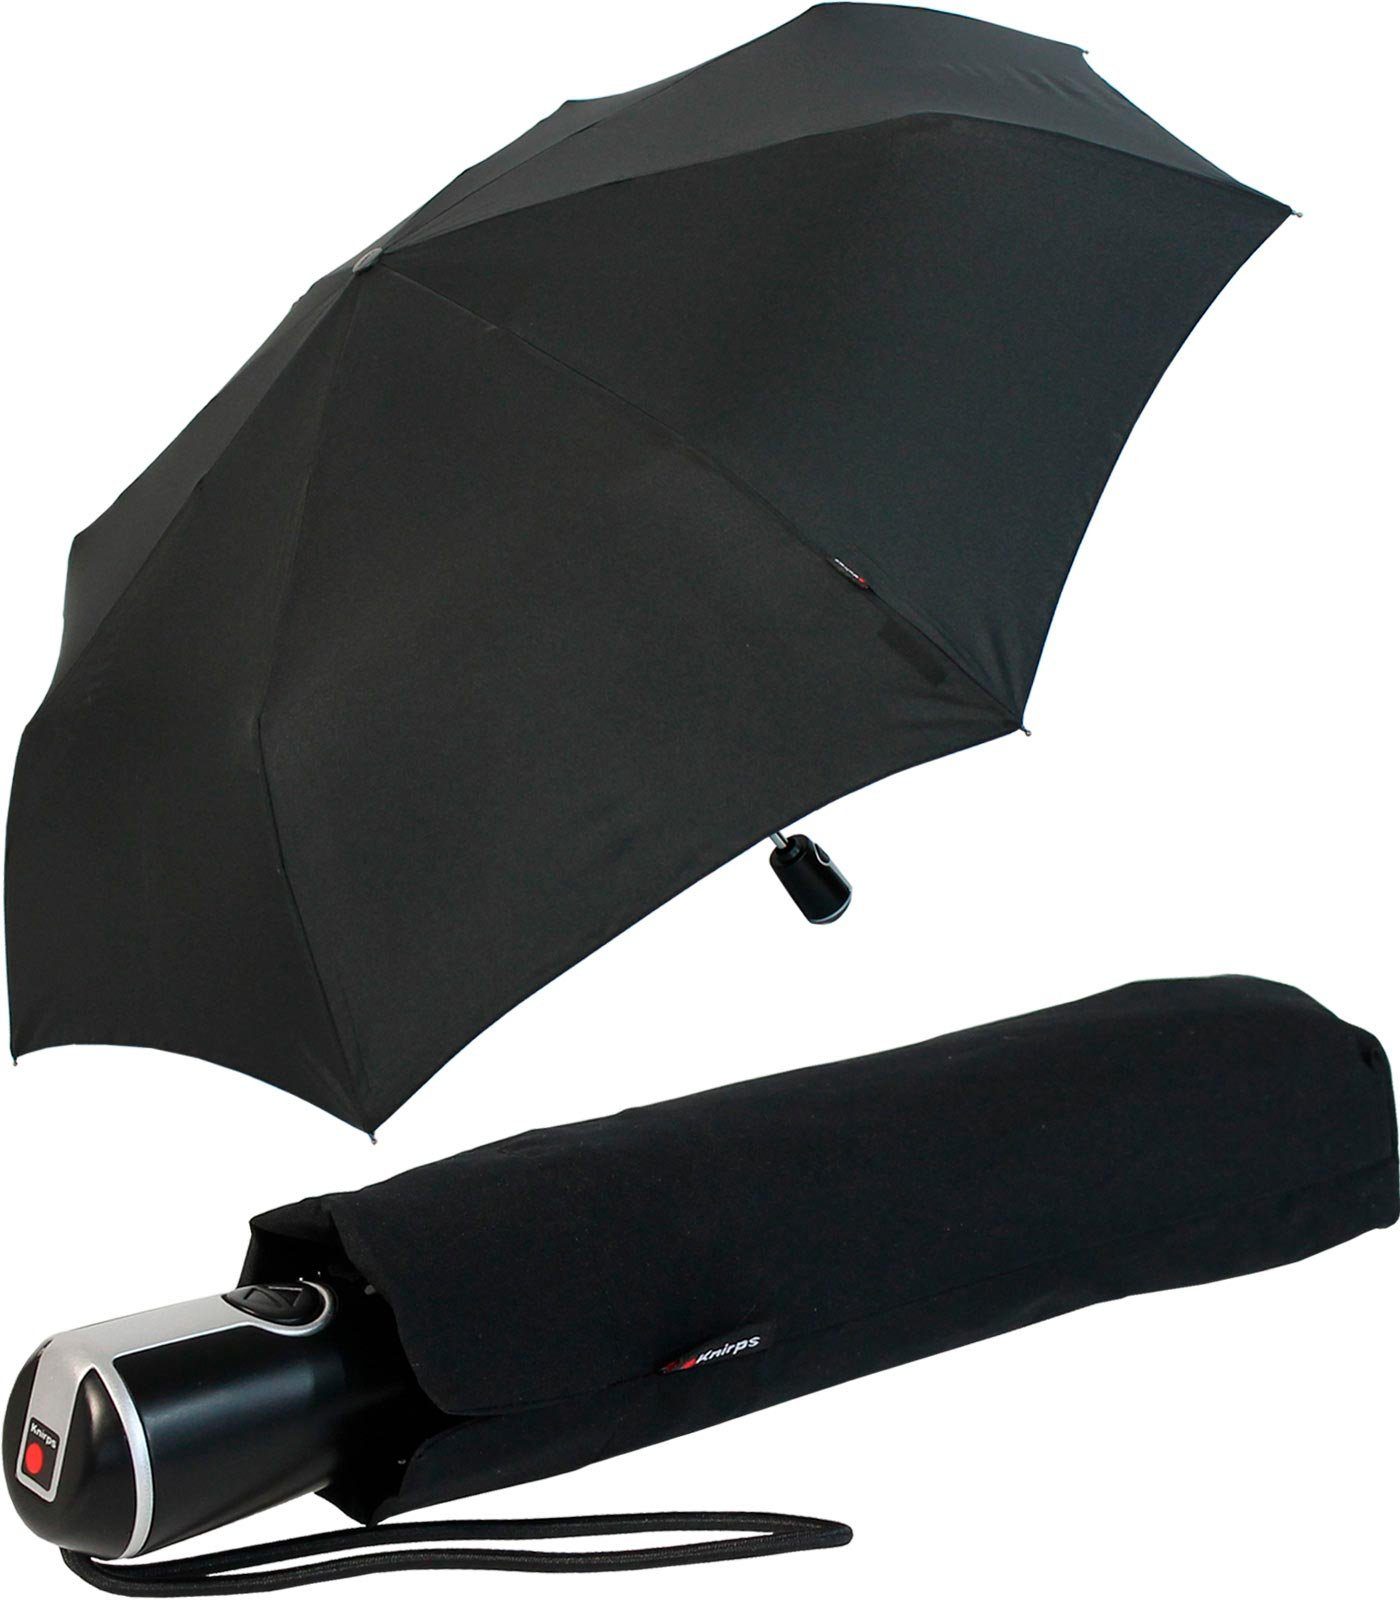 Taschenregenschirm Large große, Auf-Zu-Automatik, Duomatic mit stabile der Begleiter Knirps® schwarz